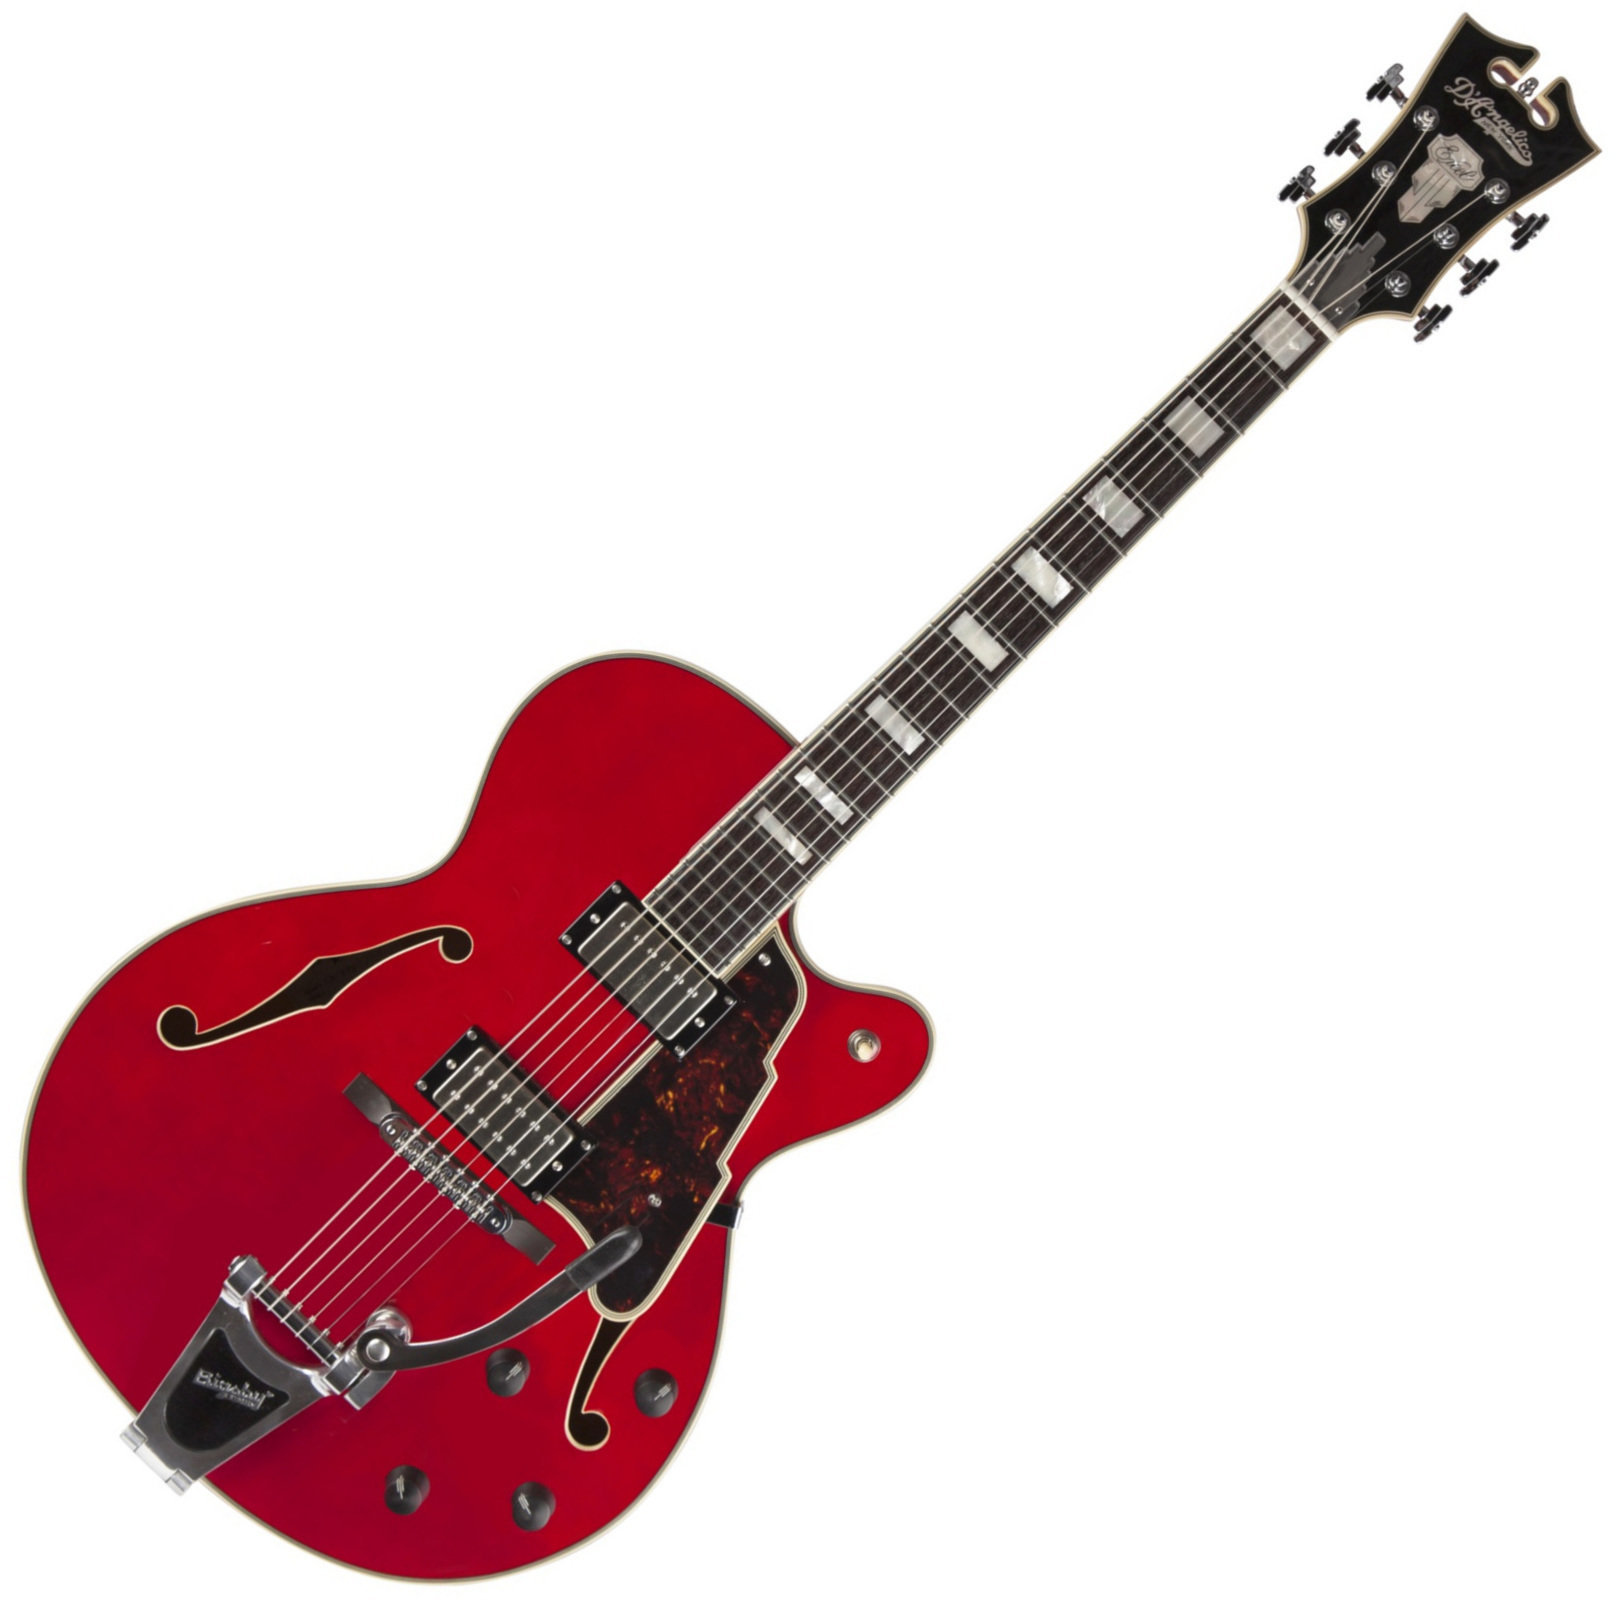 Gitara semi-akustyczna D'Angelico Excel 175 Cherry